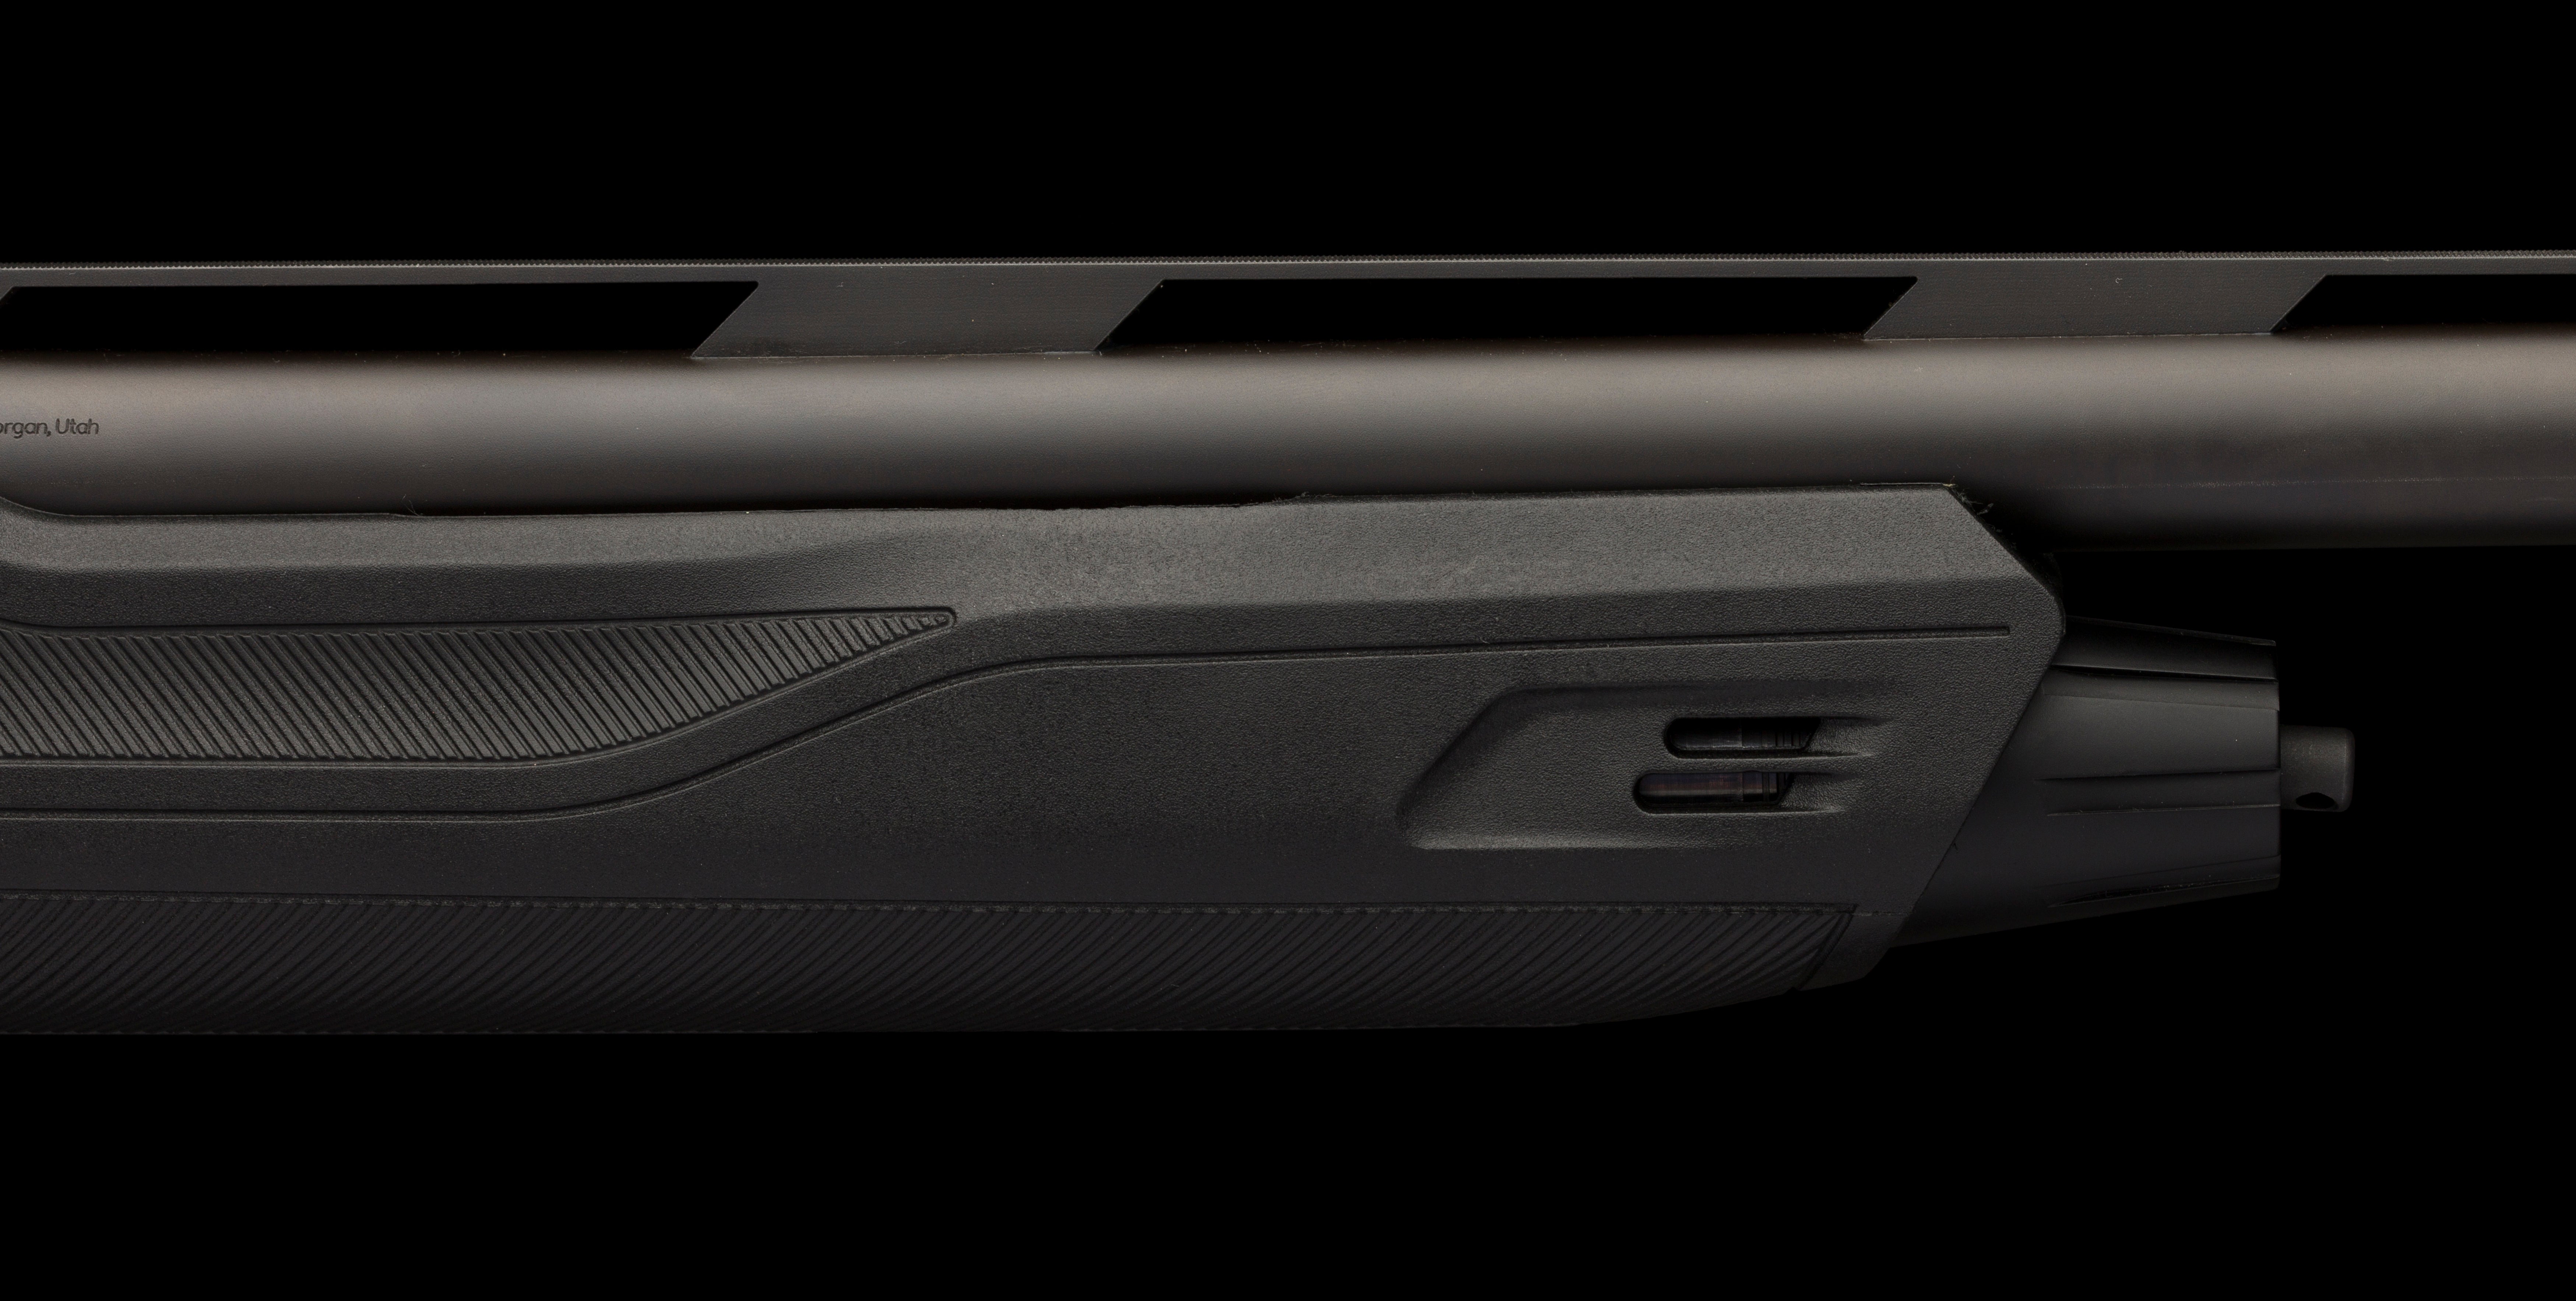 SX4 Semi-Auto Shotgun Overview